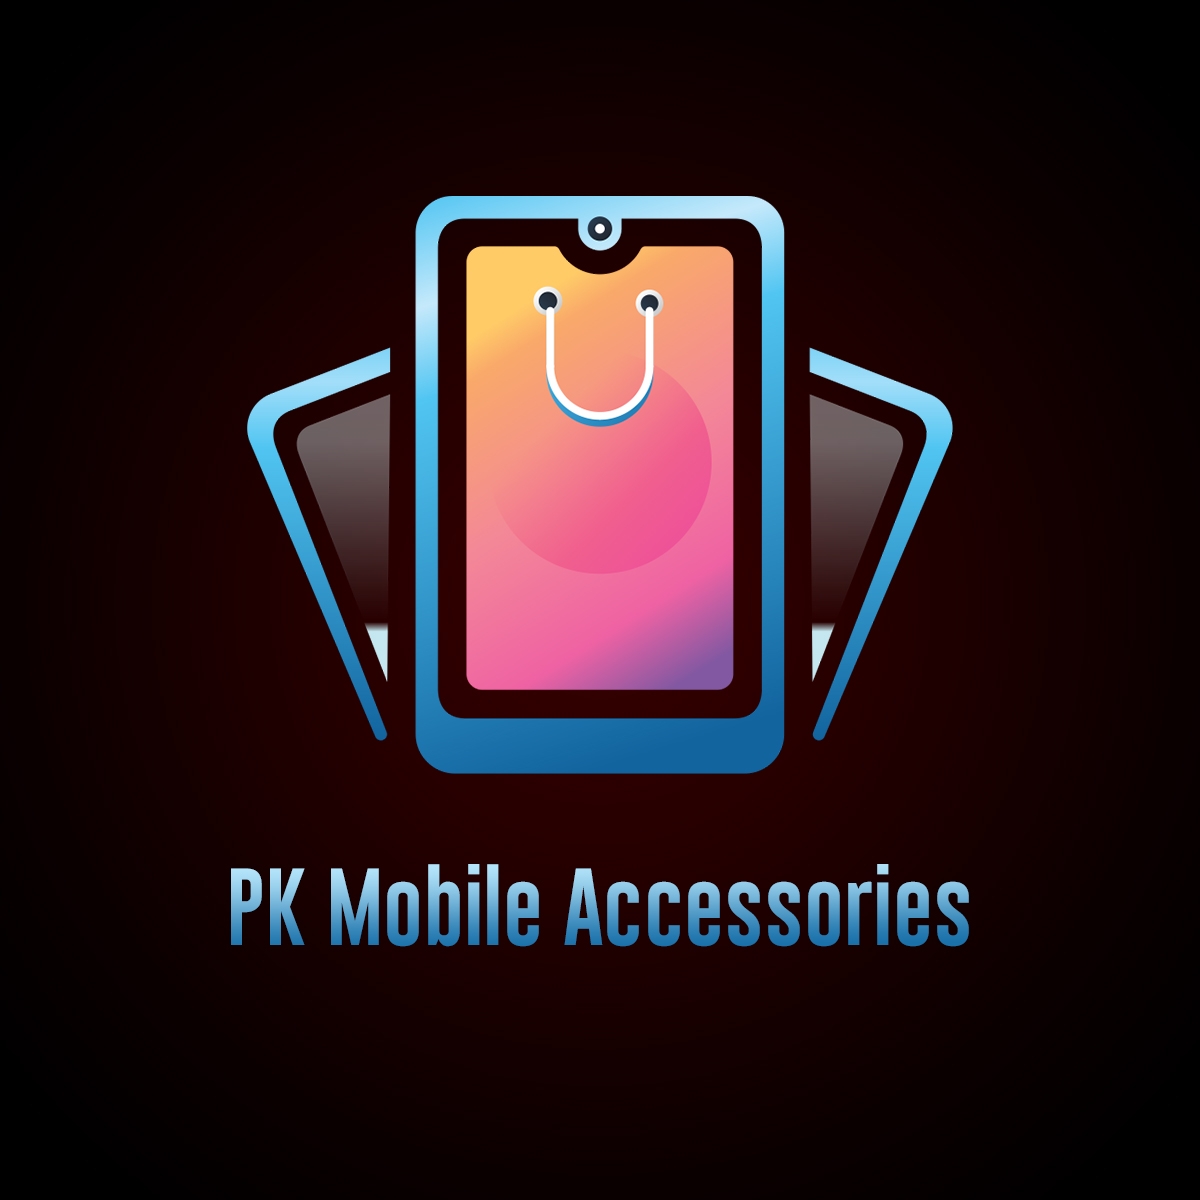 PK Mobile Accessories